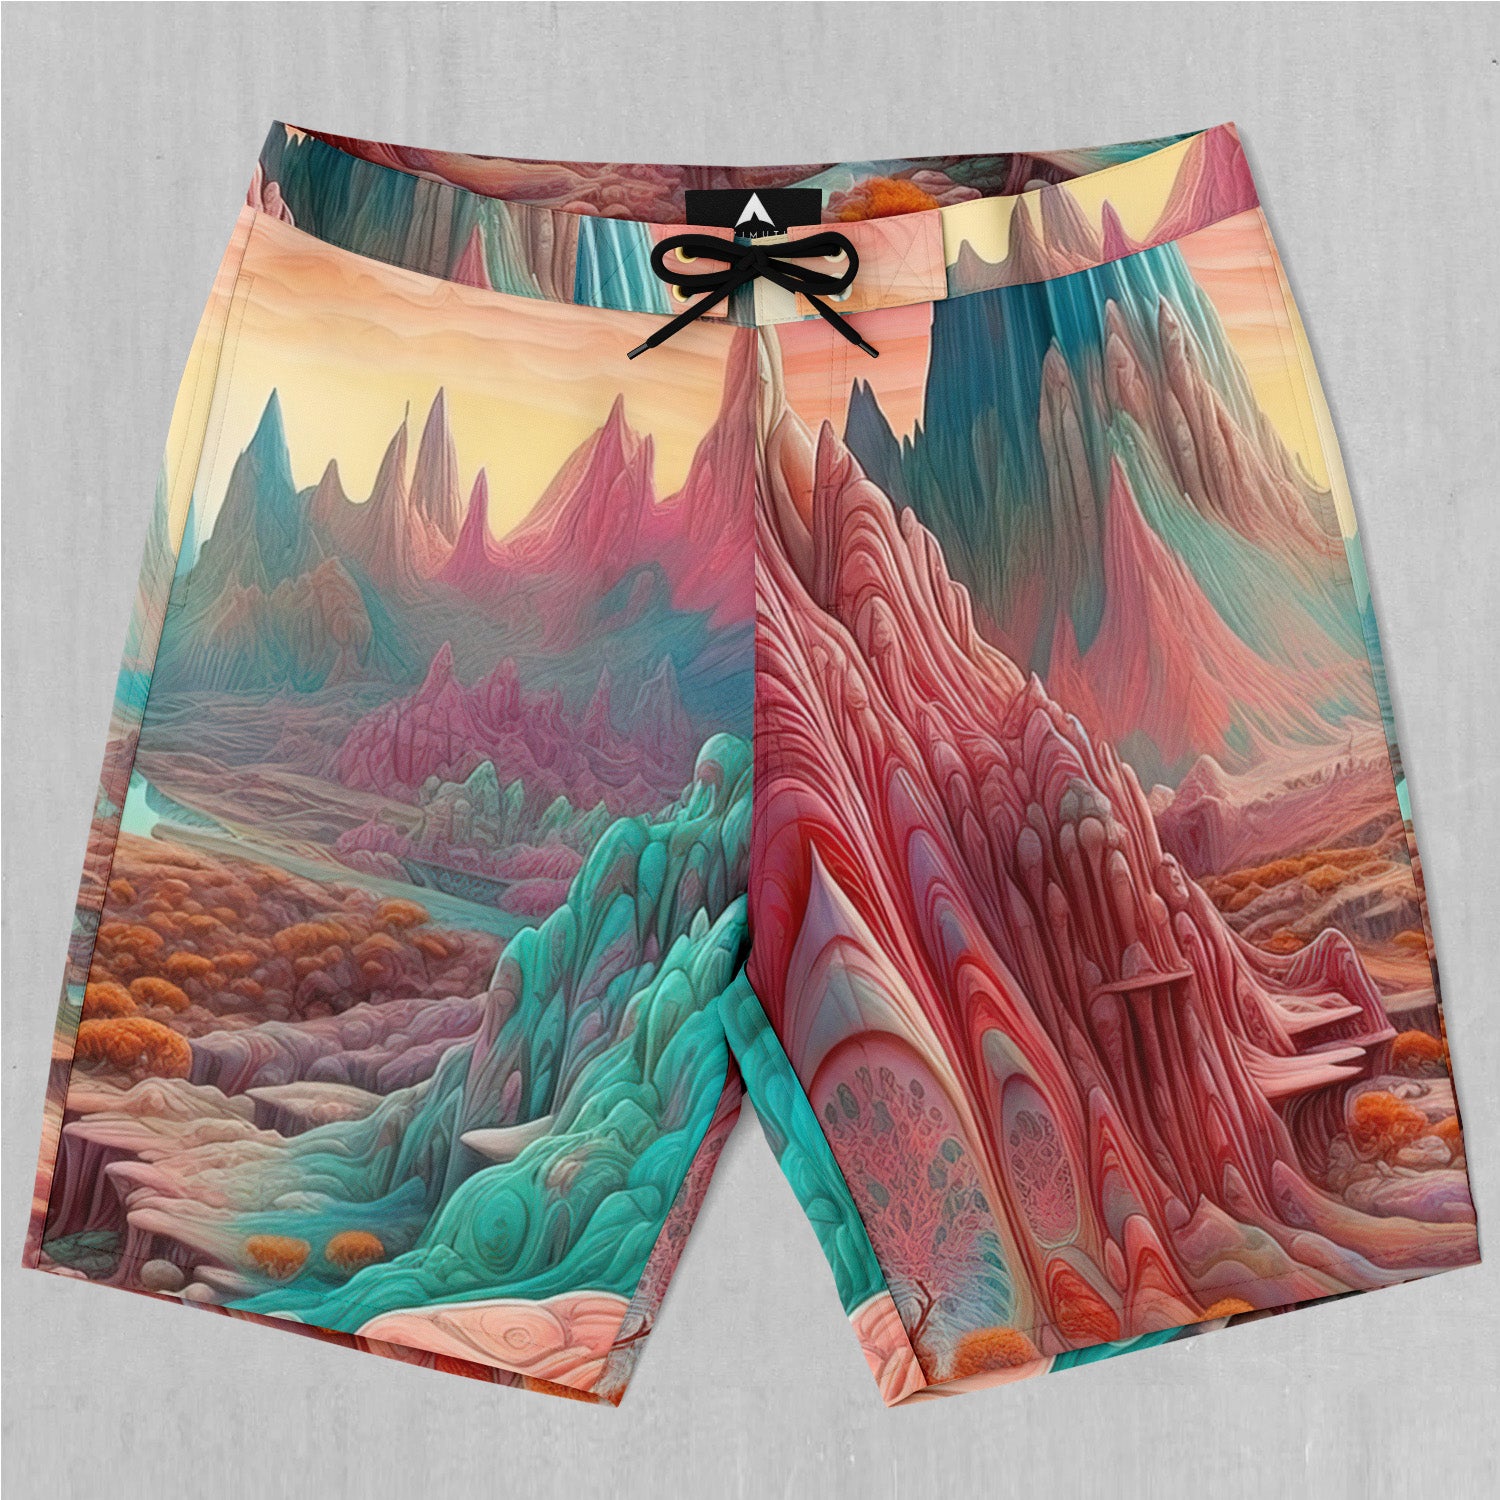 Dream Canyon Board Shorts